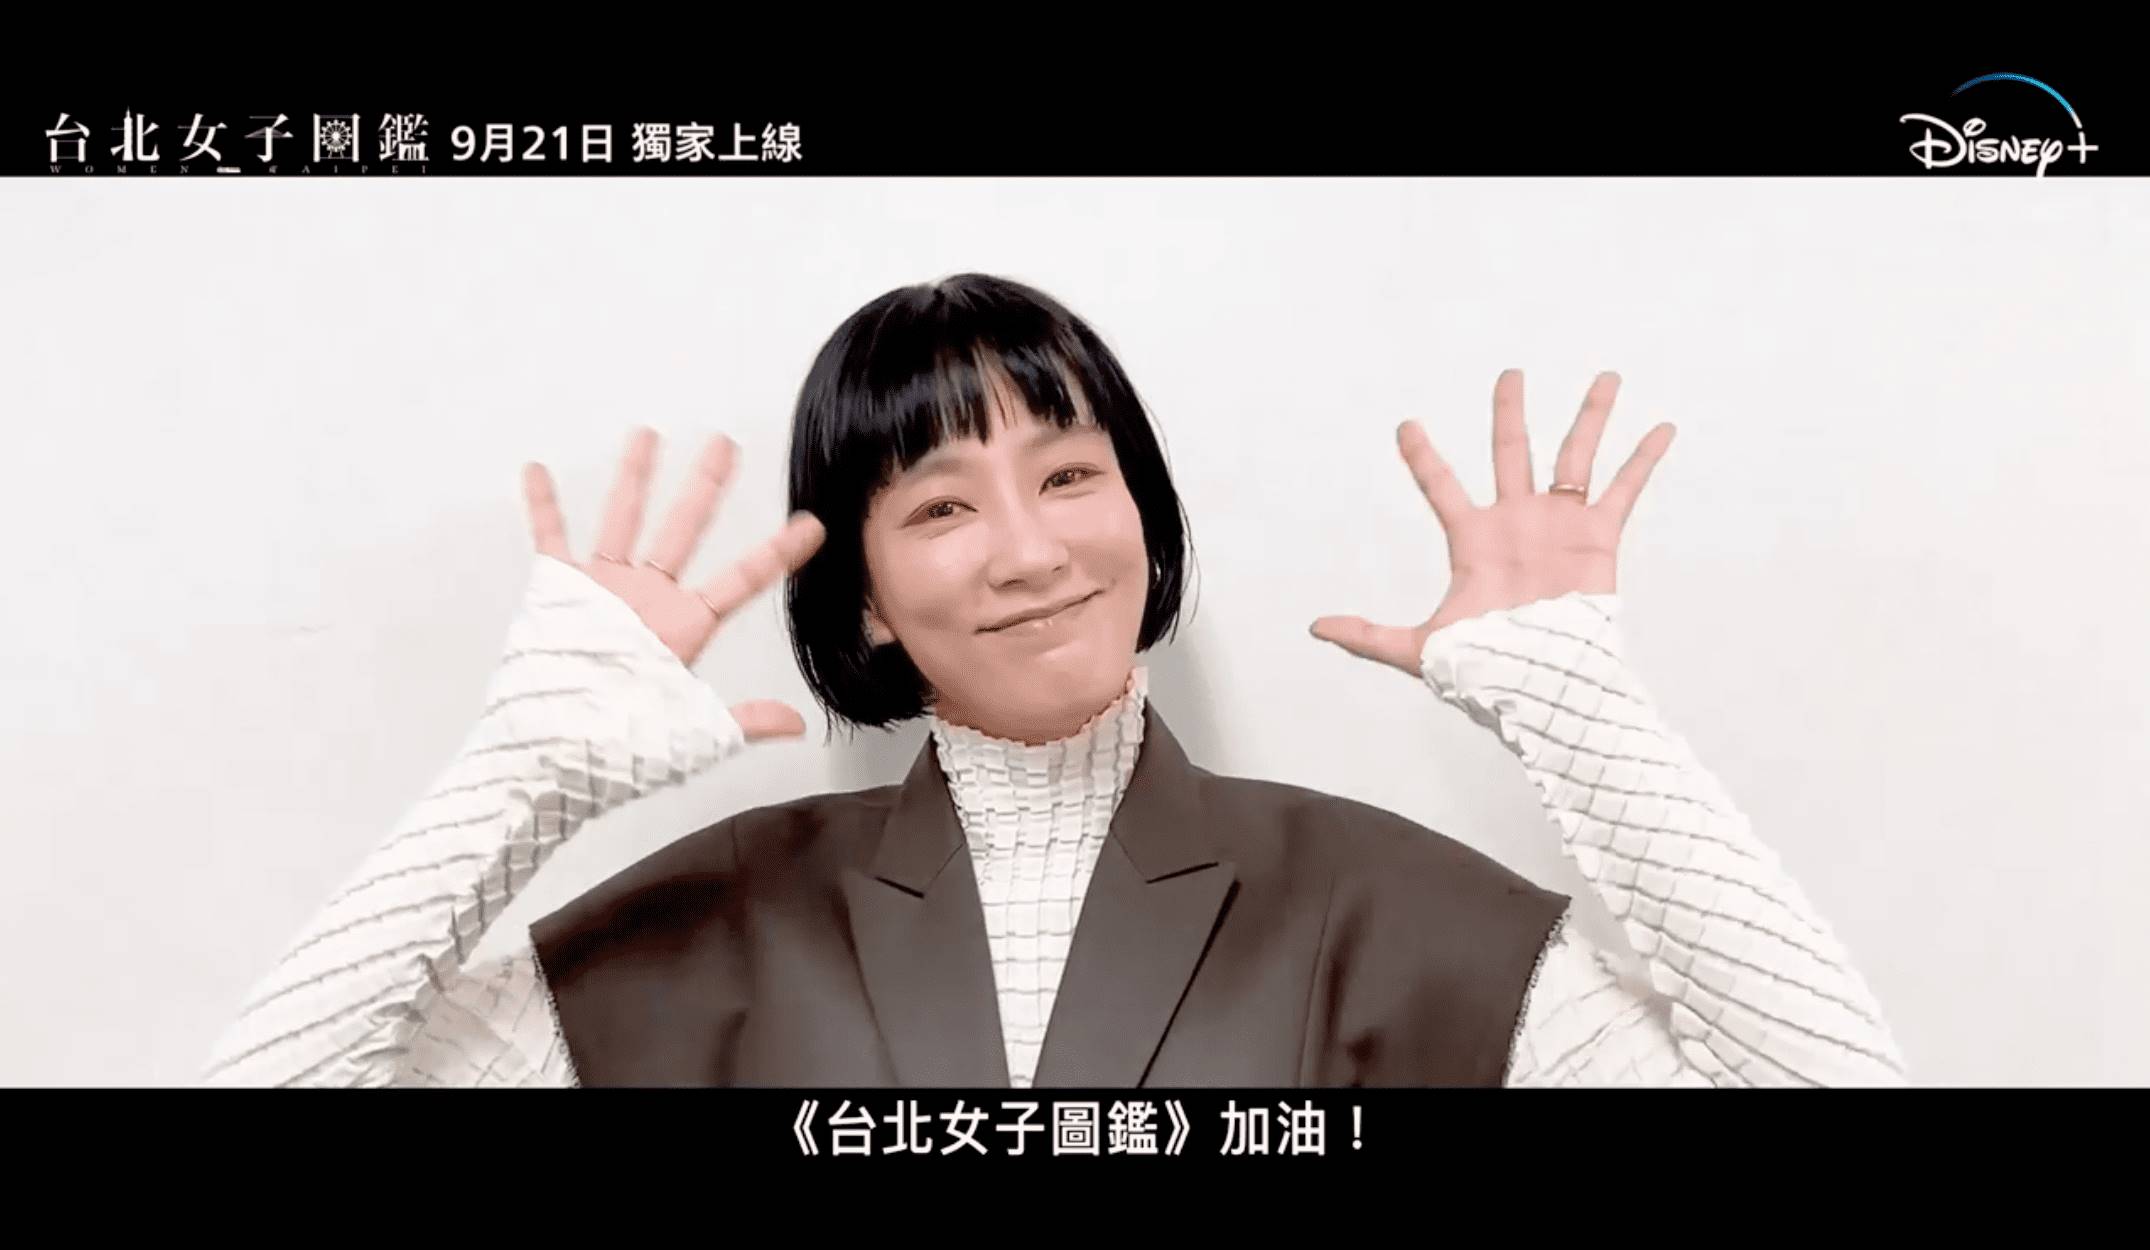 由桂綸鎂主演的台劇《台北女子圖鑑》將於今（9/21）日在Disney+正式上線，預告釋出就讓網友期待值爆表。